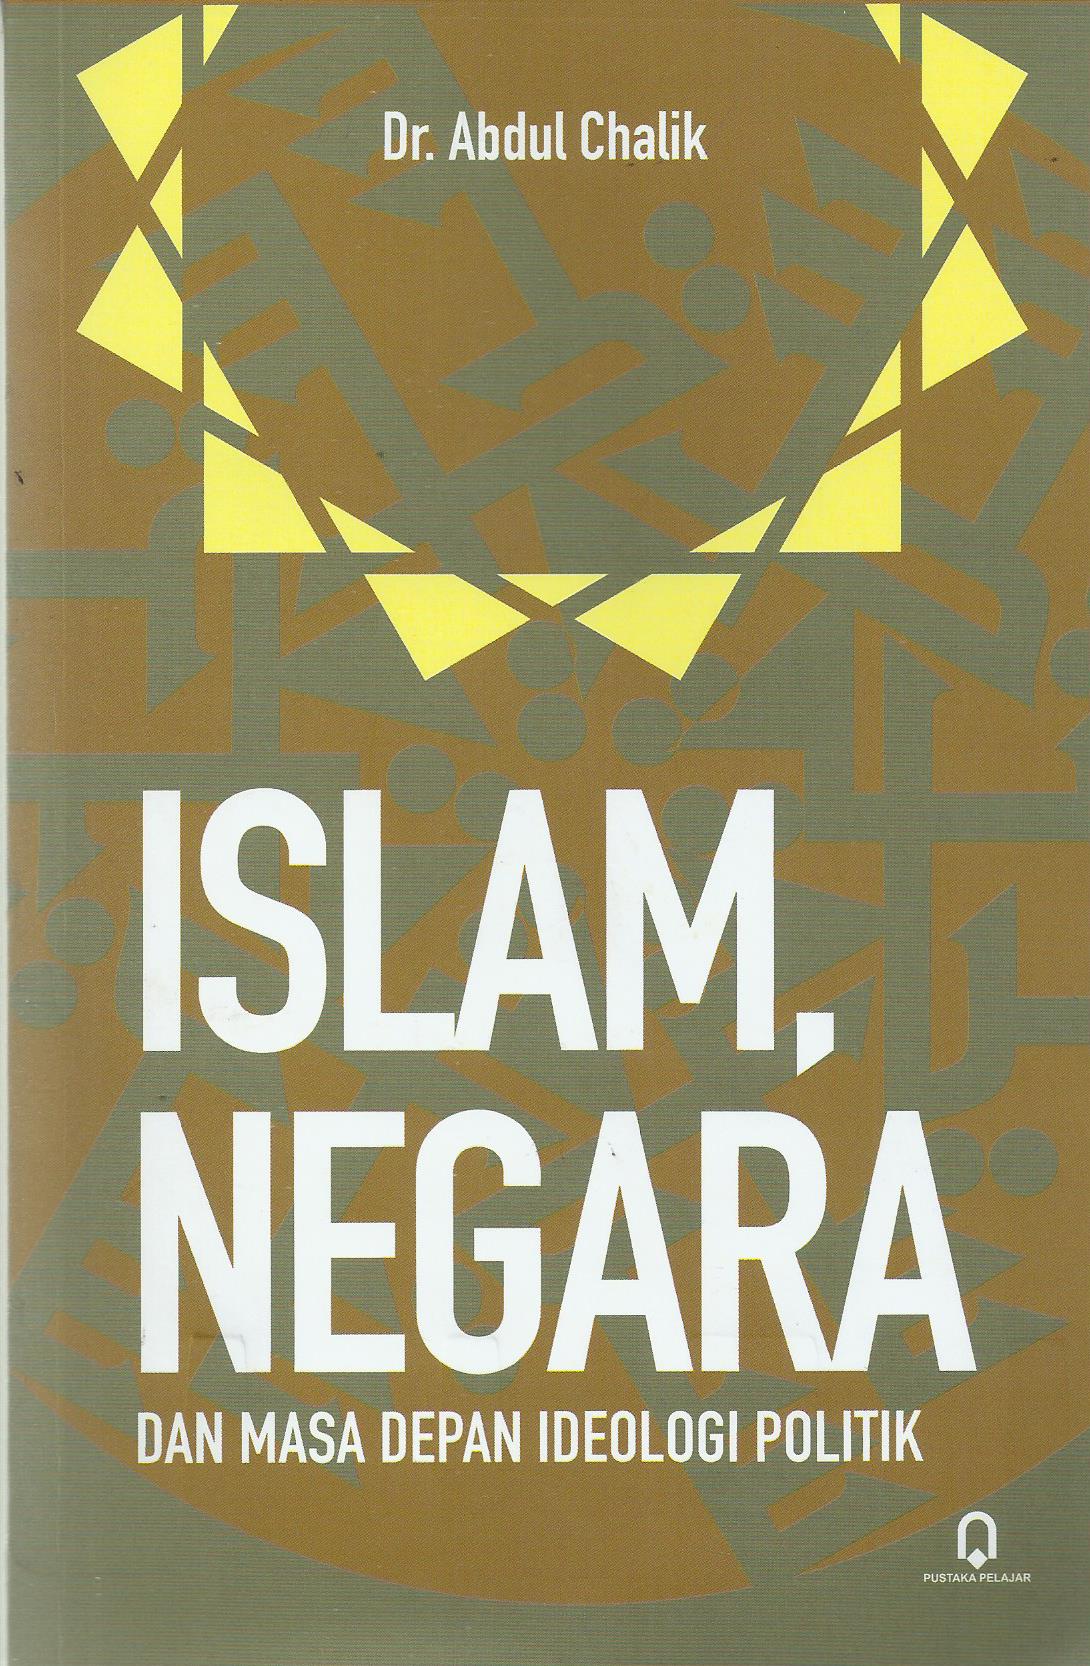 Islam Negara dan Masa Depan Ideologi Politik